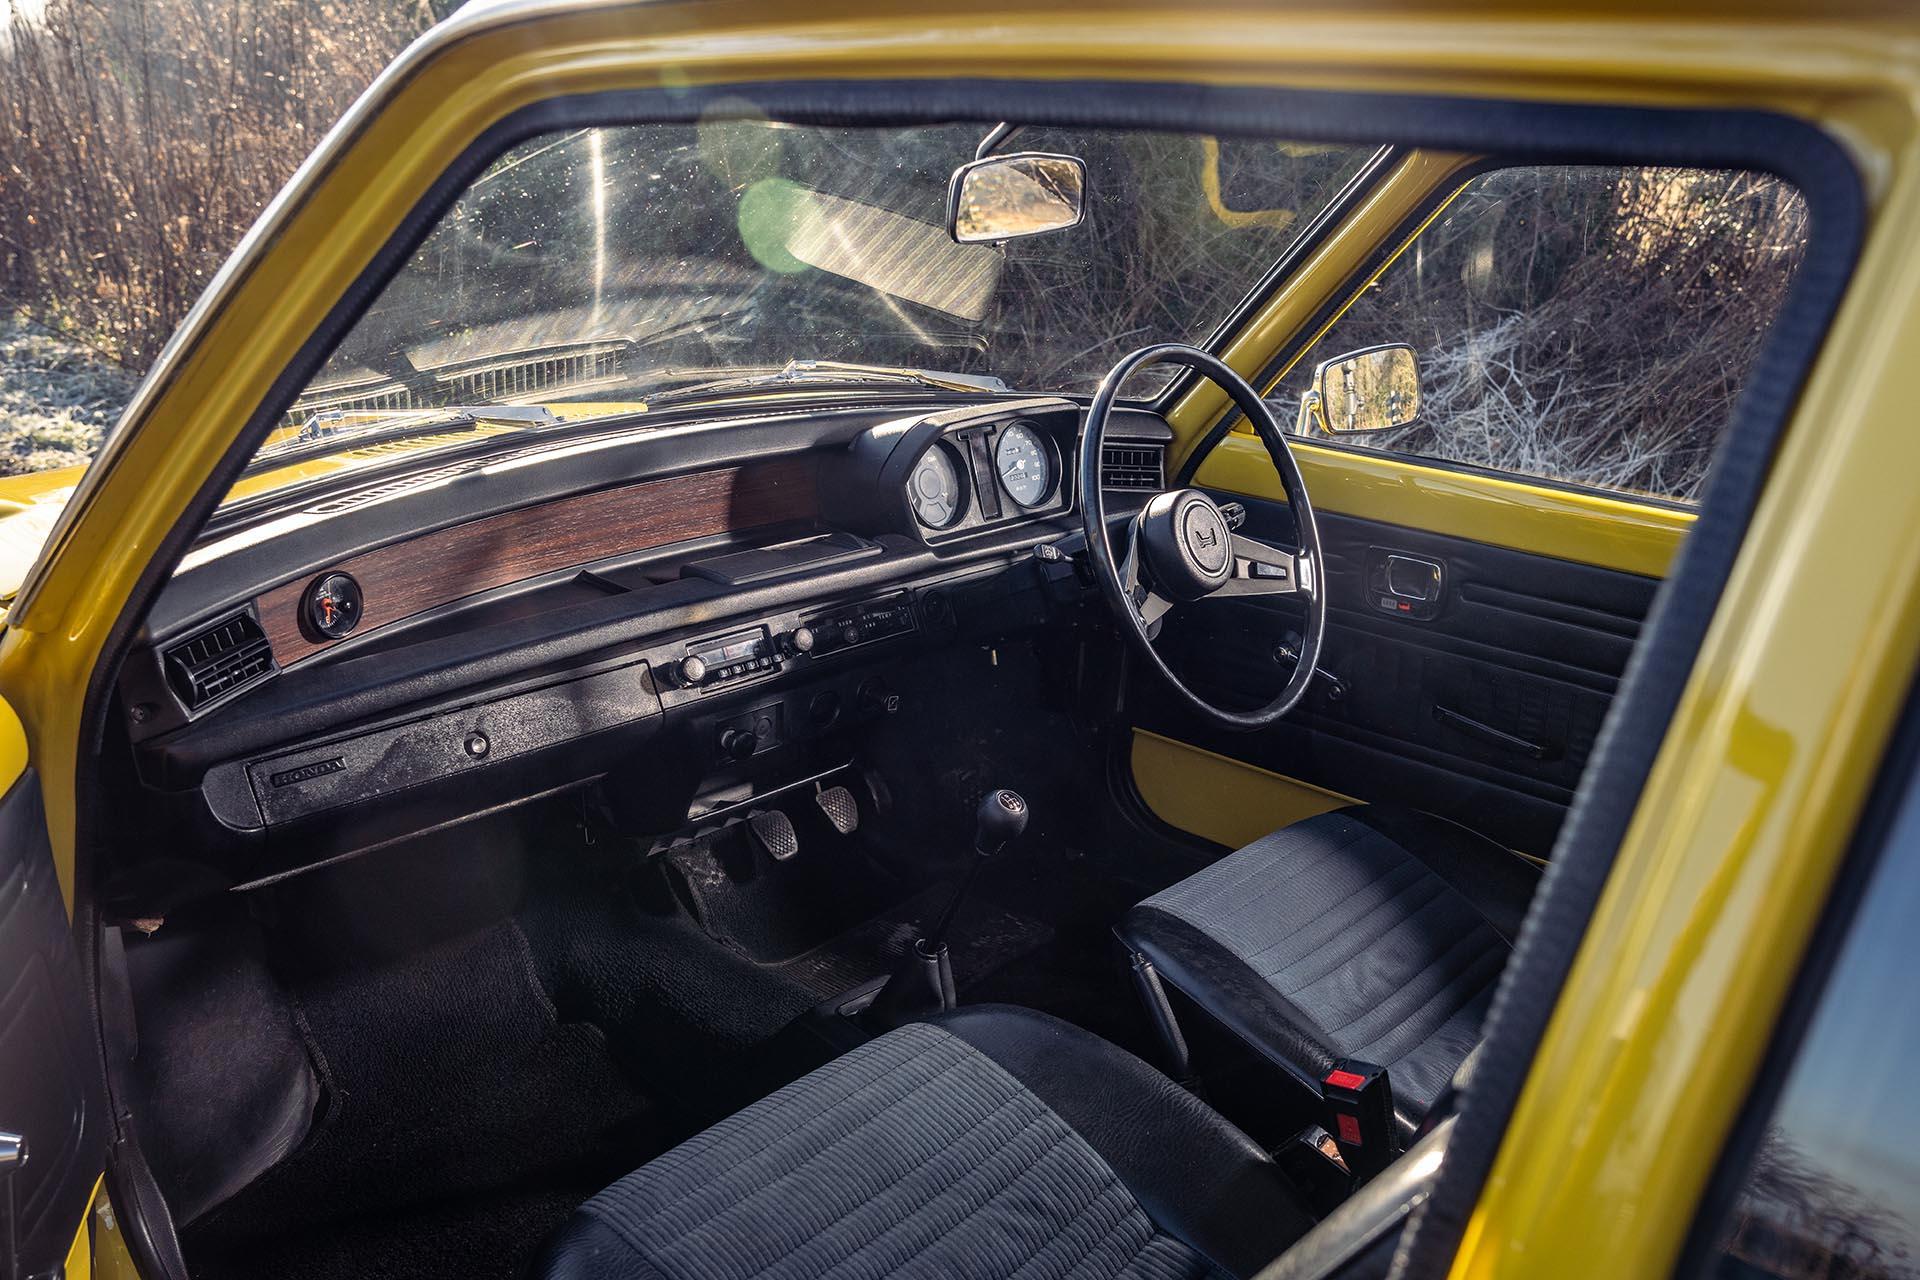 Honda Civic (1975) interieur overzicht